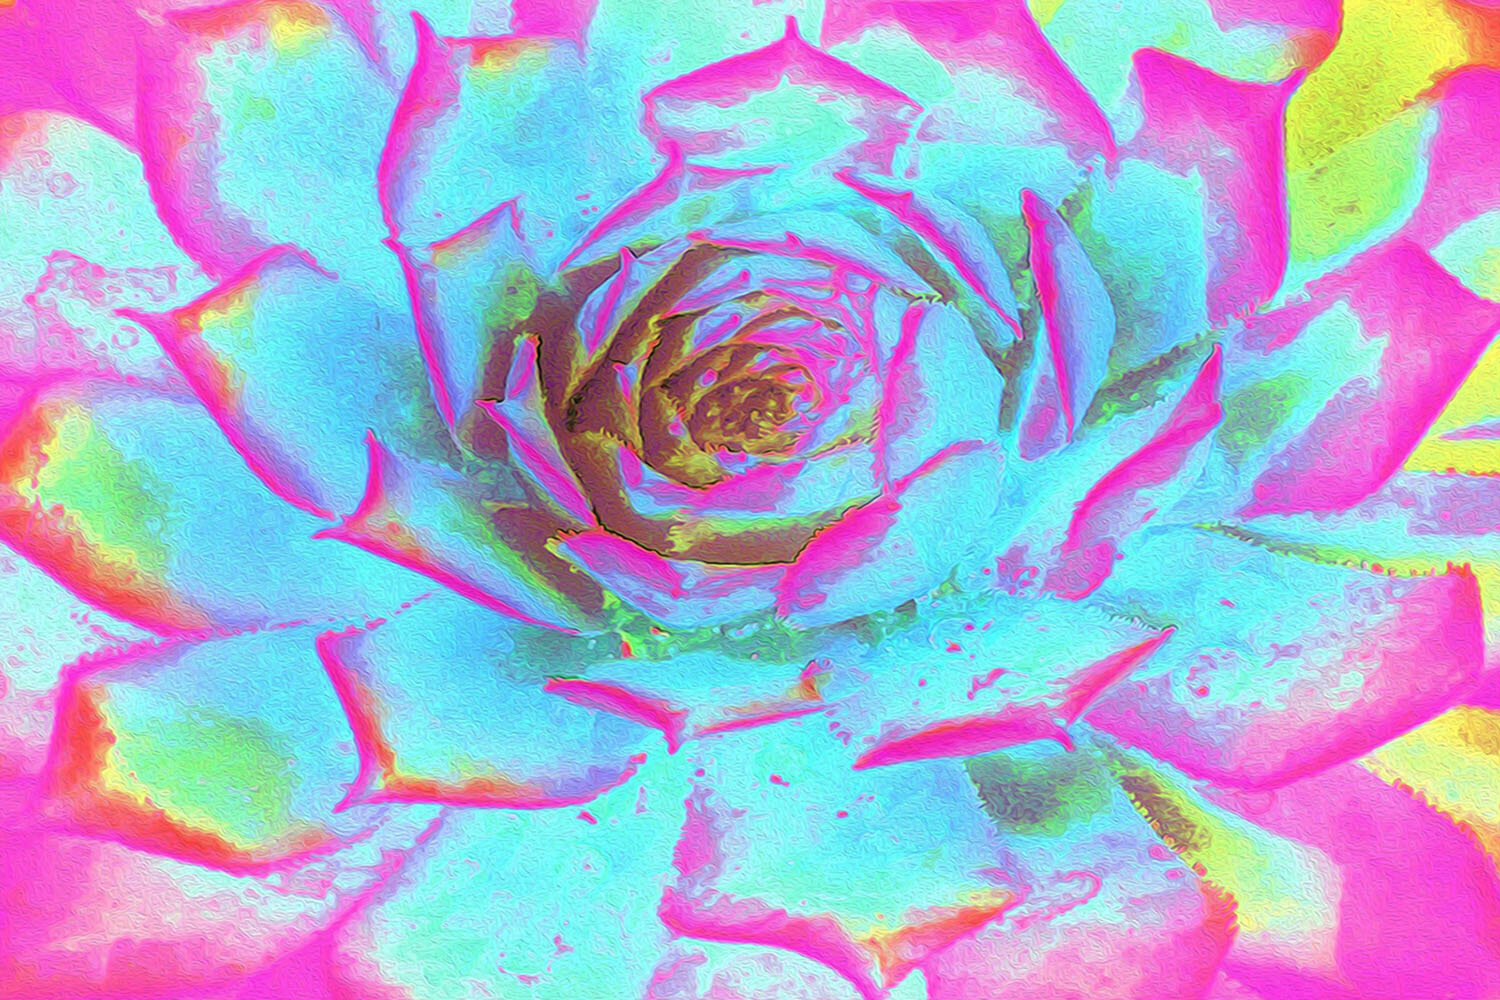 Hot Pink and Blue Succulent Sedum Rosette